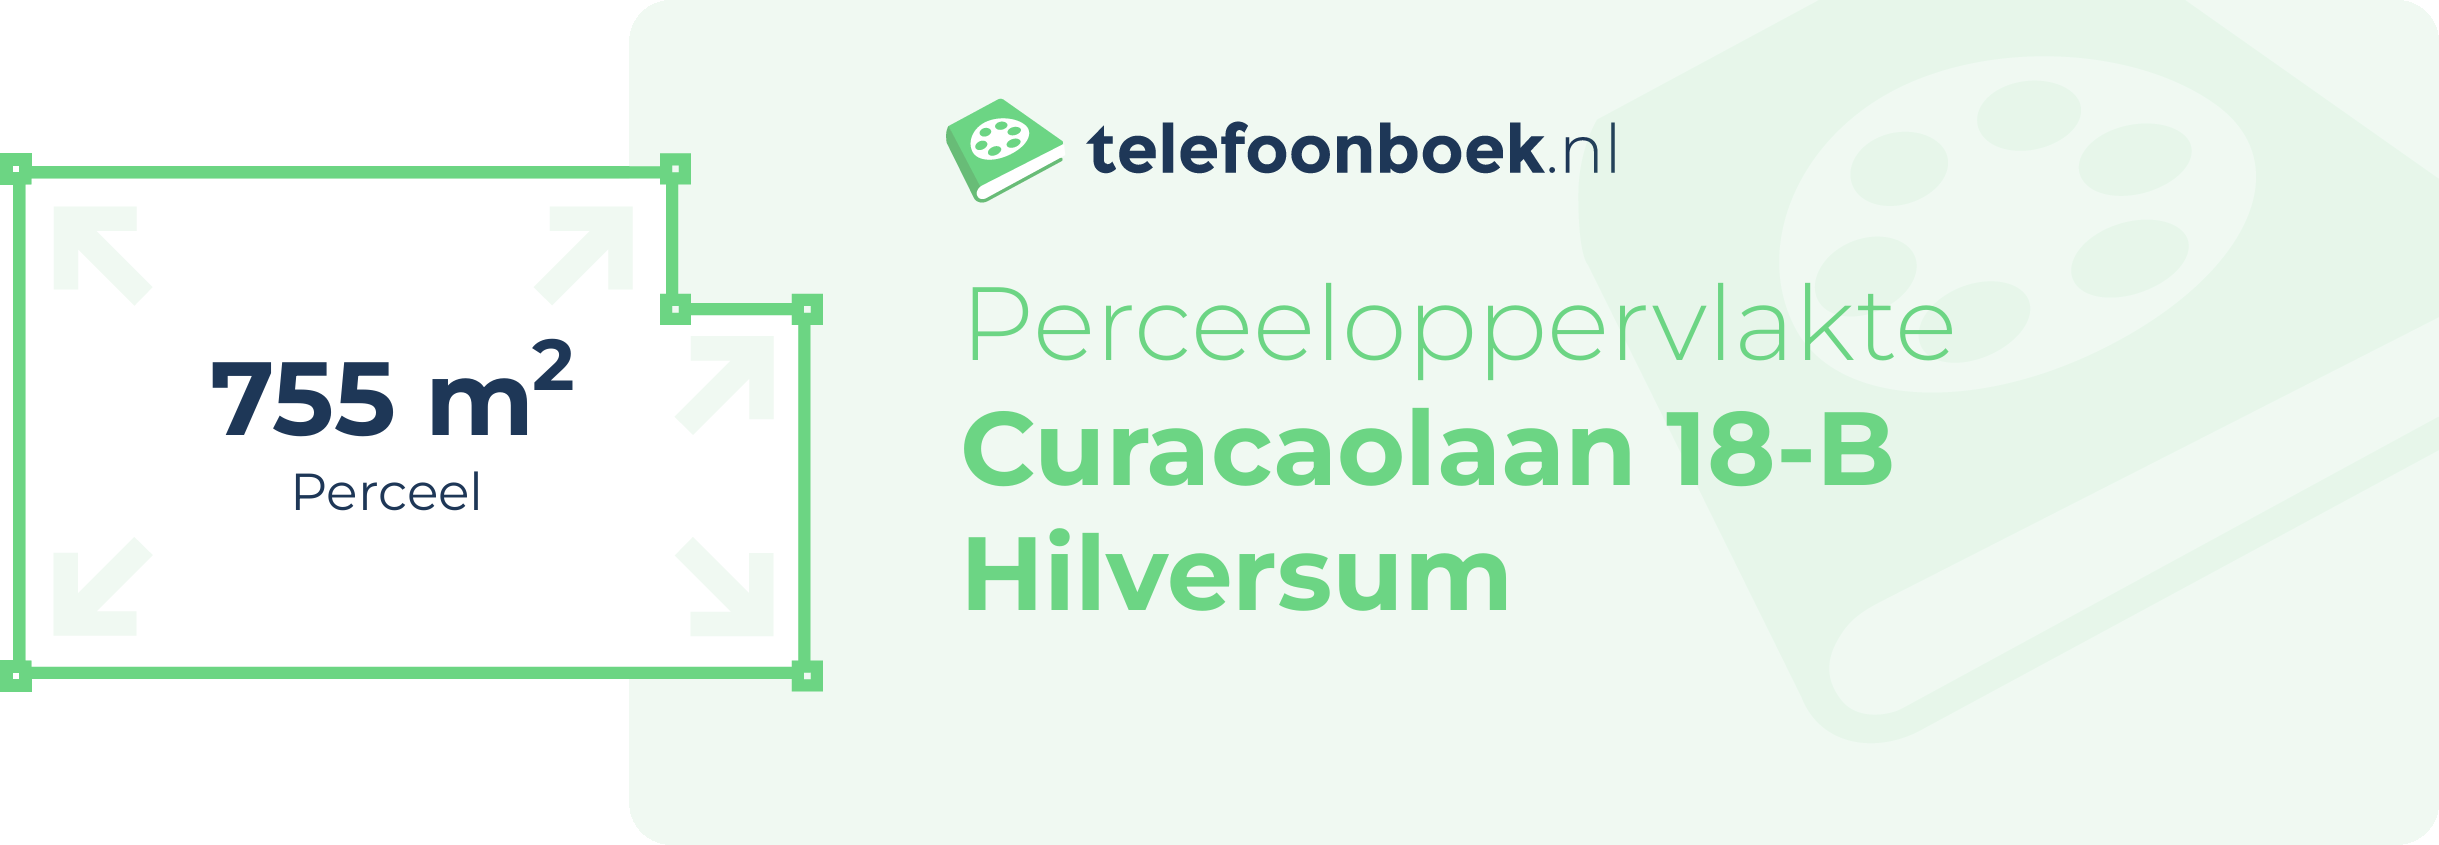 Perceeloppervlakte Curacaolaan 18-B Hilversum